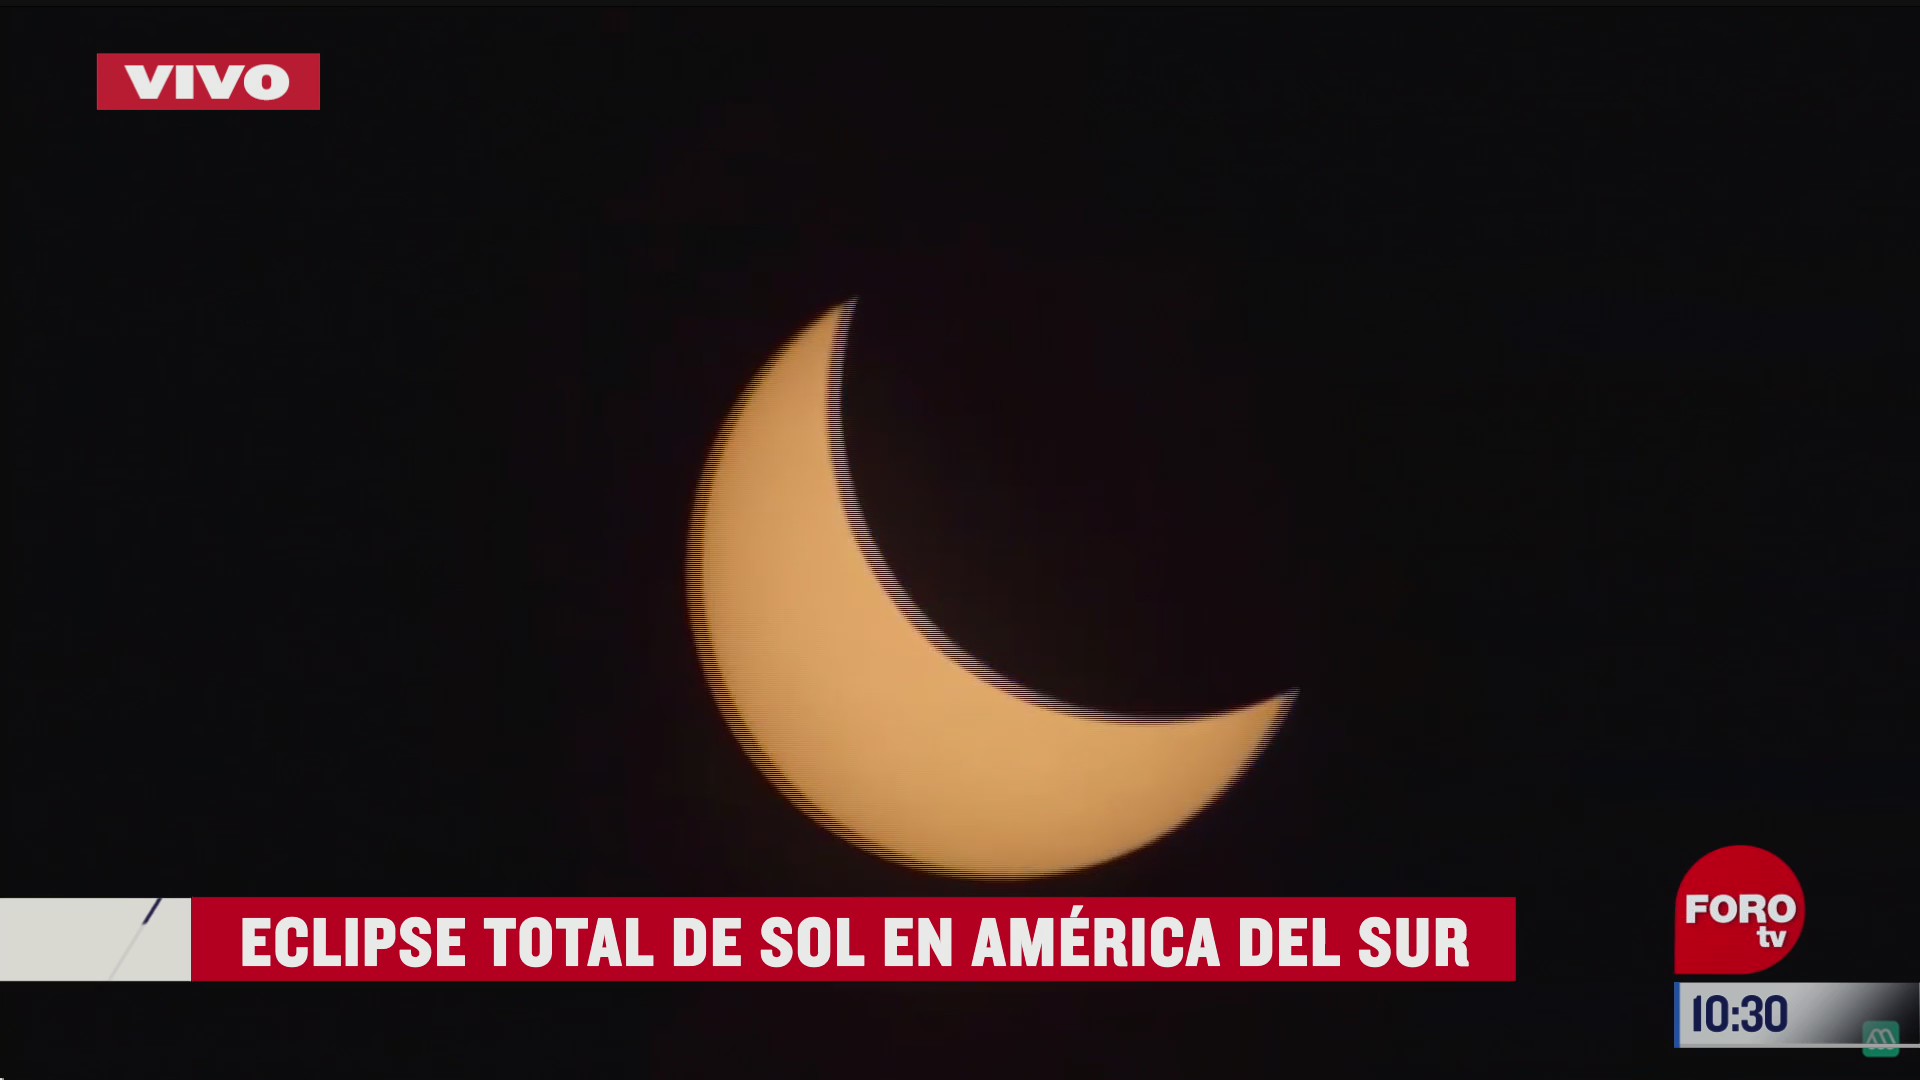 luna a punto de cubrir totalmente el sol en eclipse